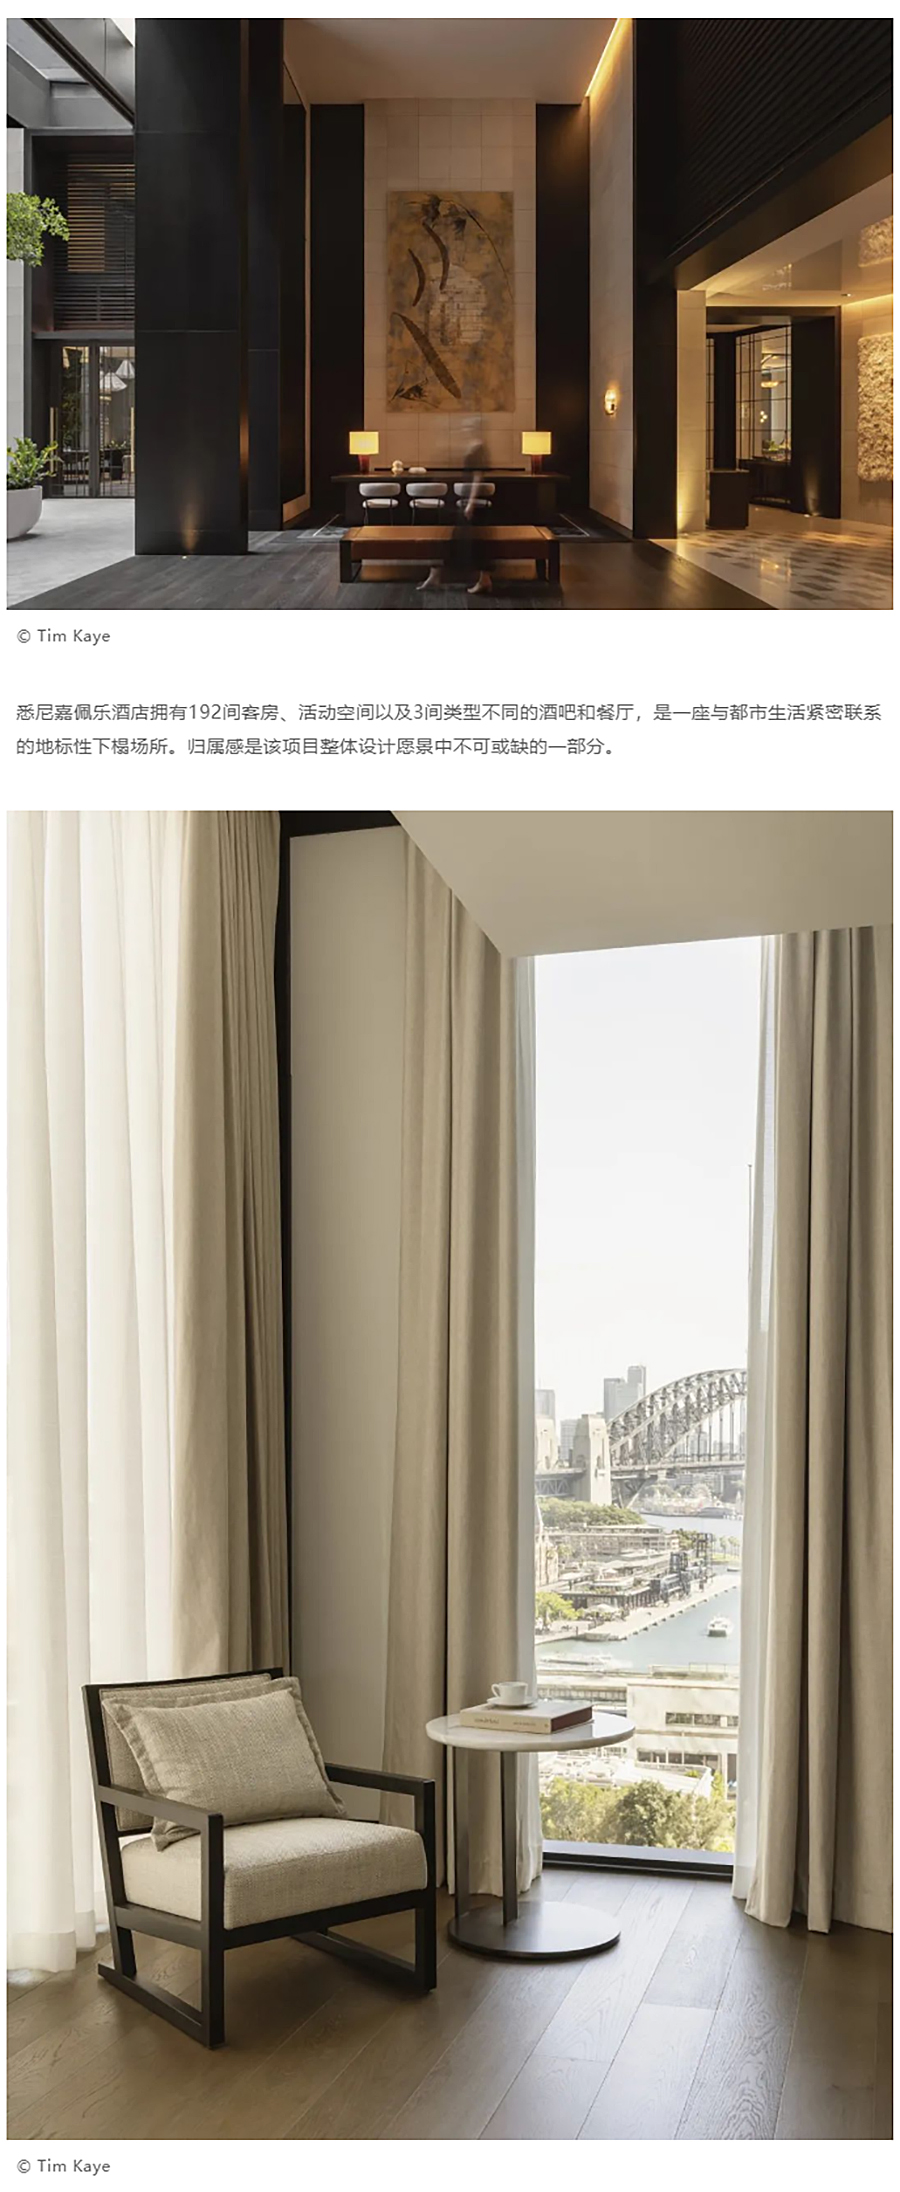 Renewal-Zone：悉尼嘉佩乐酒店︱工业时代理性建筑的奢华变身_0003_图层-4 拷贝.jpg